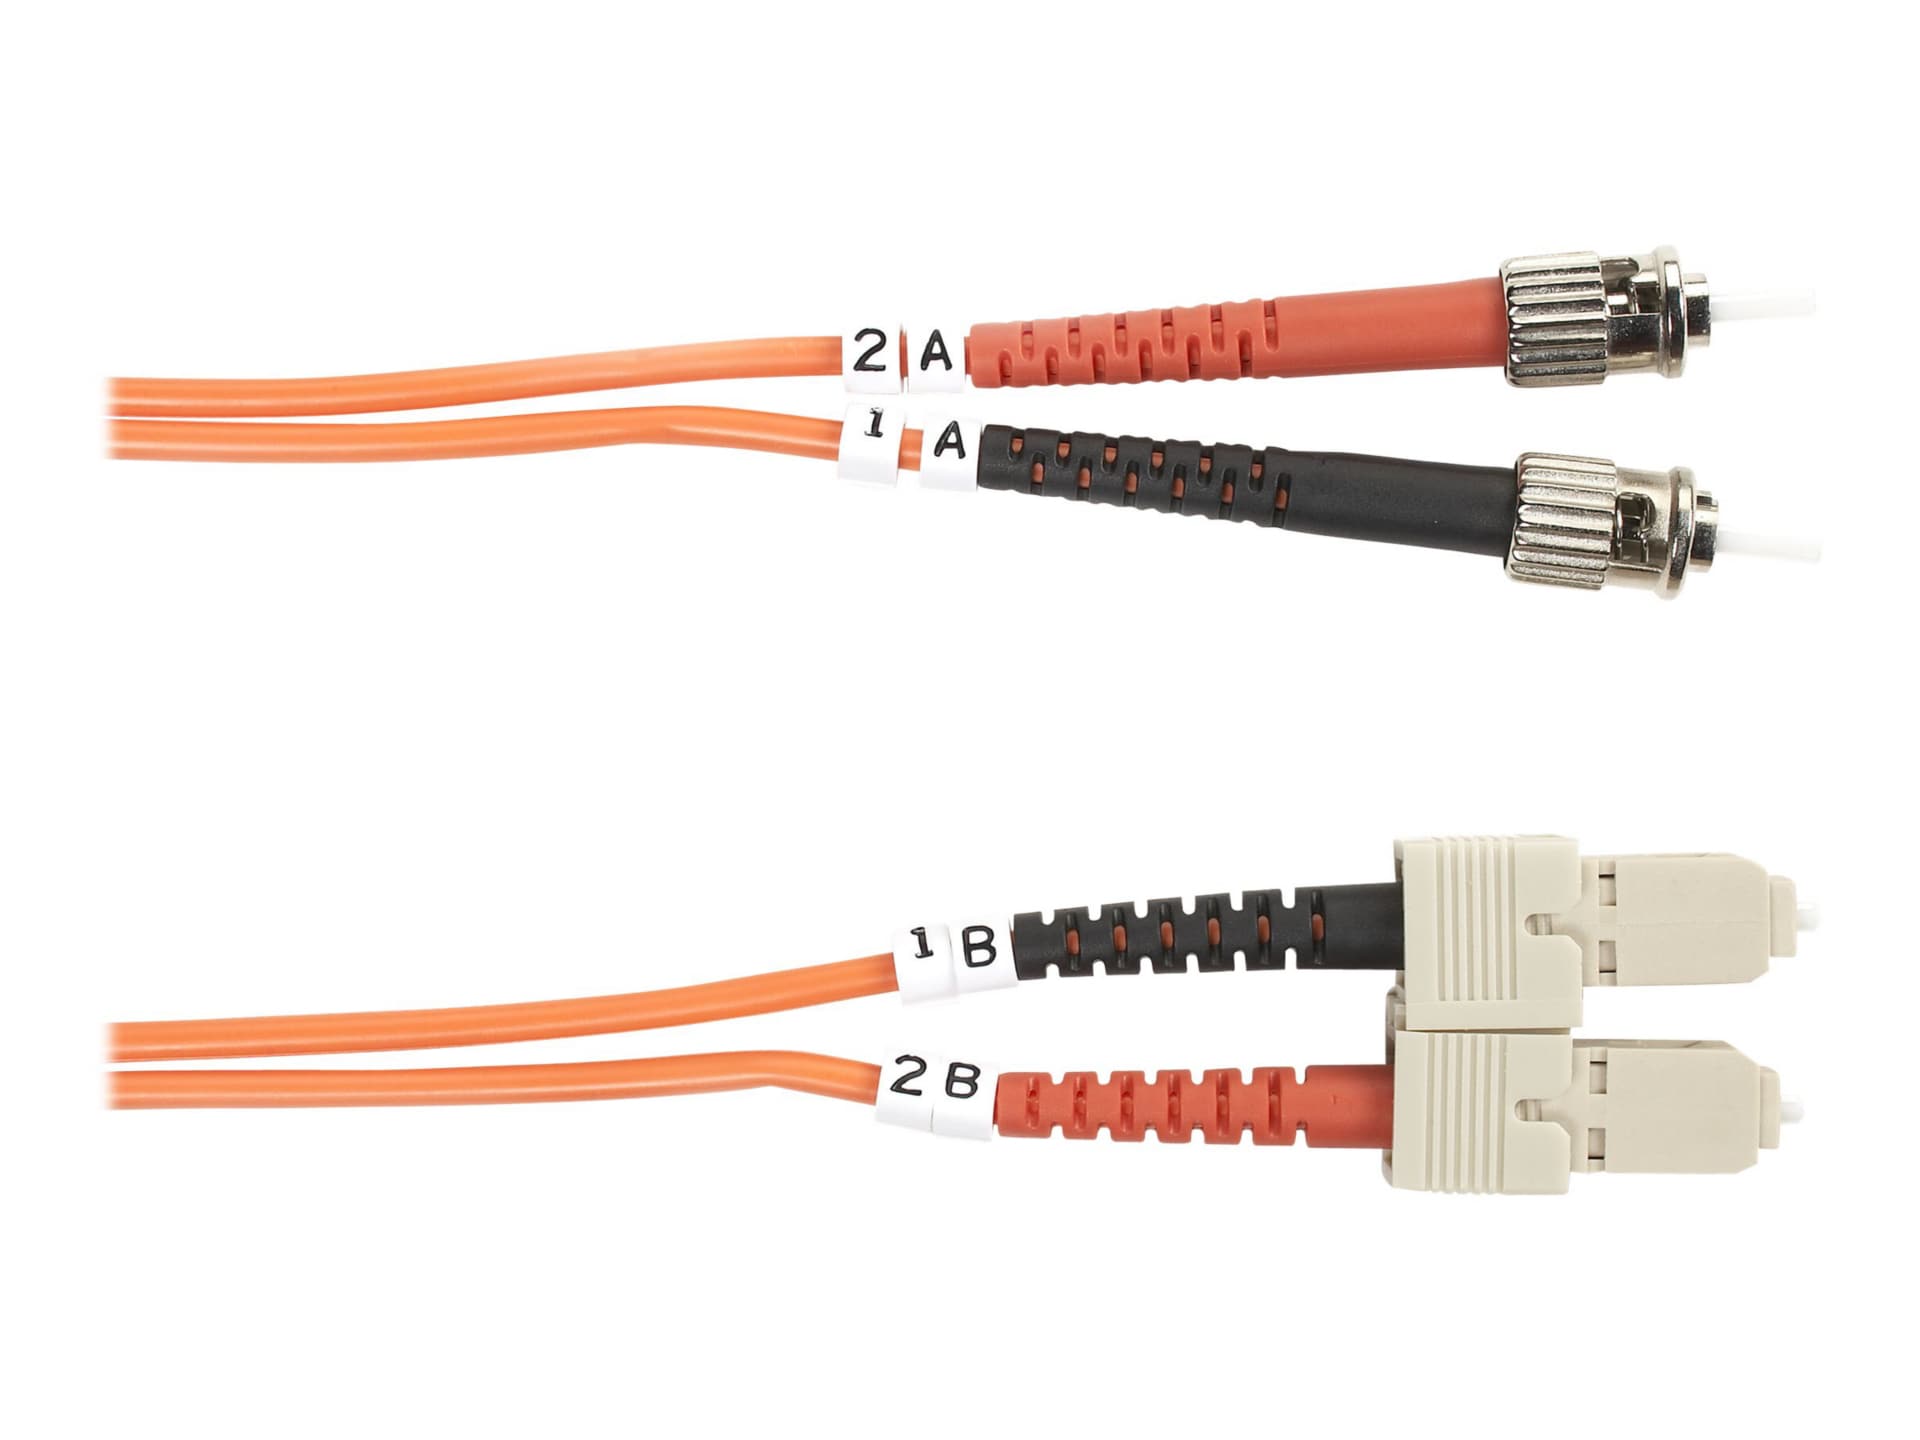 Black Box Value Line patch cable - 3 m